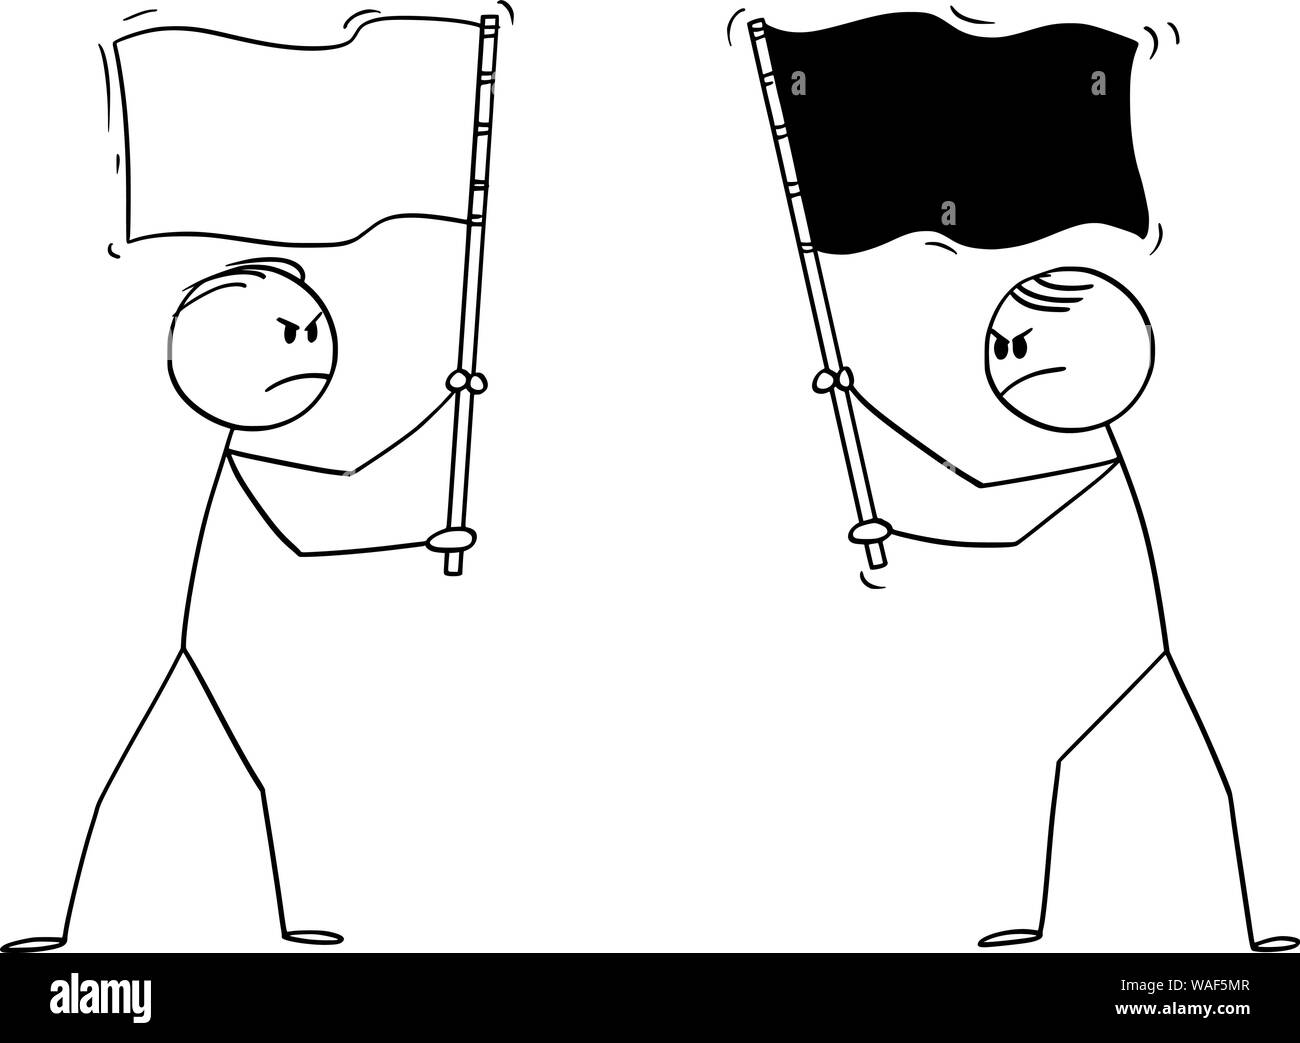 Vector cartoon stick figura disegno illustrazione concettuale di due adirato contro uomini politici o uomini di affari di diverse bandiere. Concetto di concorrenza e di ostilità. Illustrazione Vettoriale